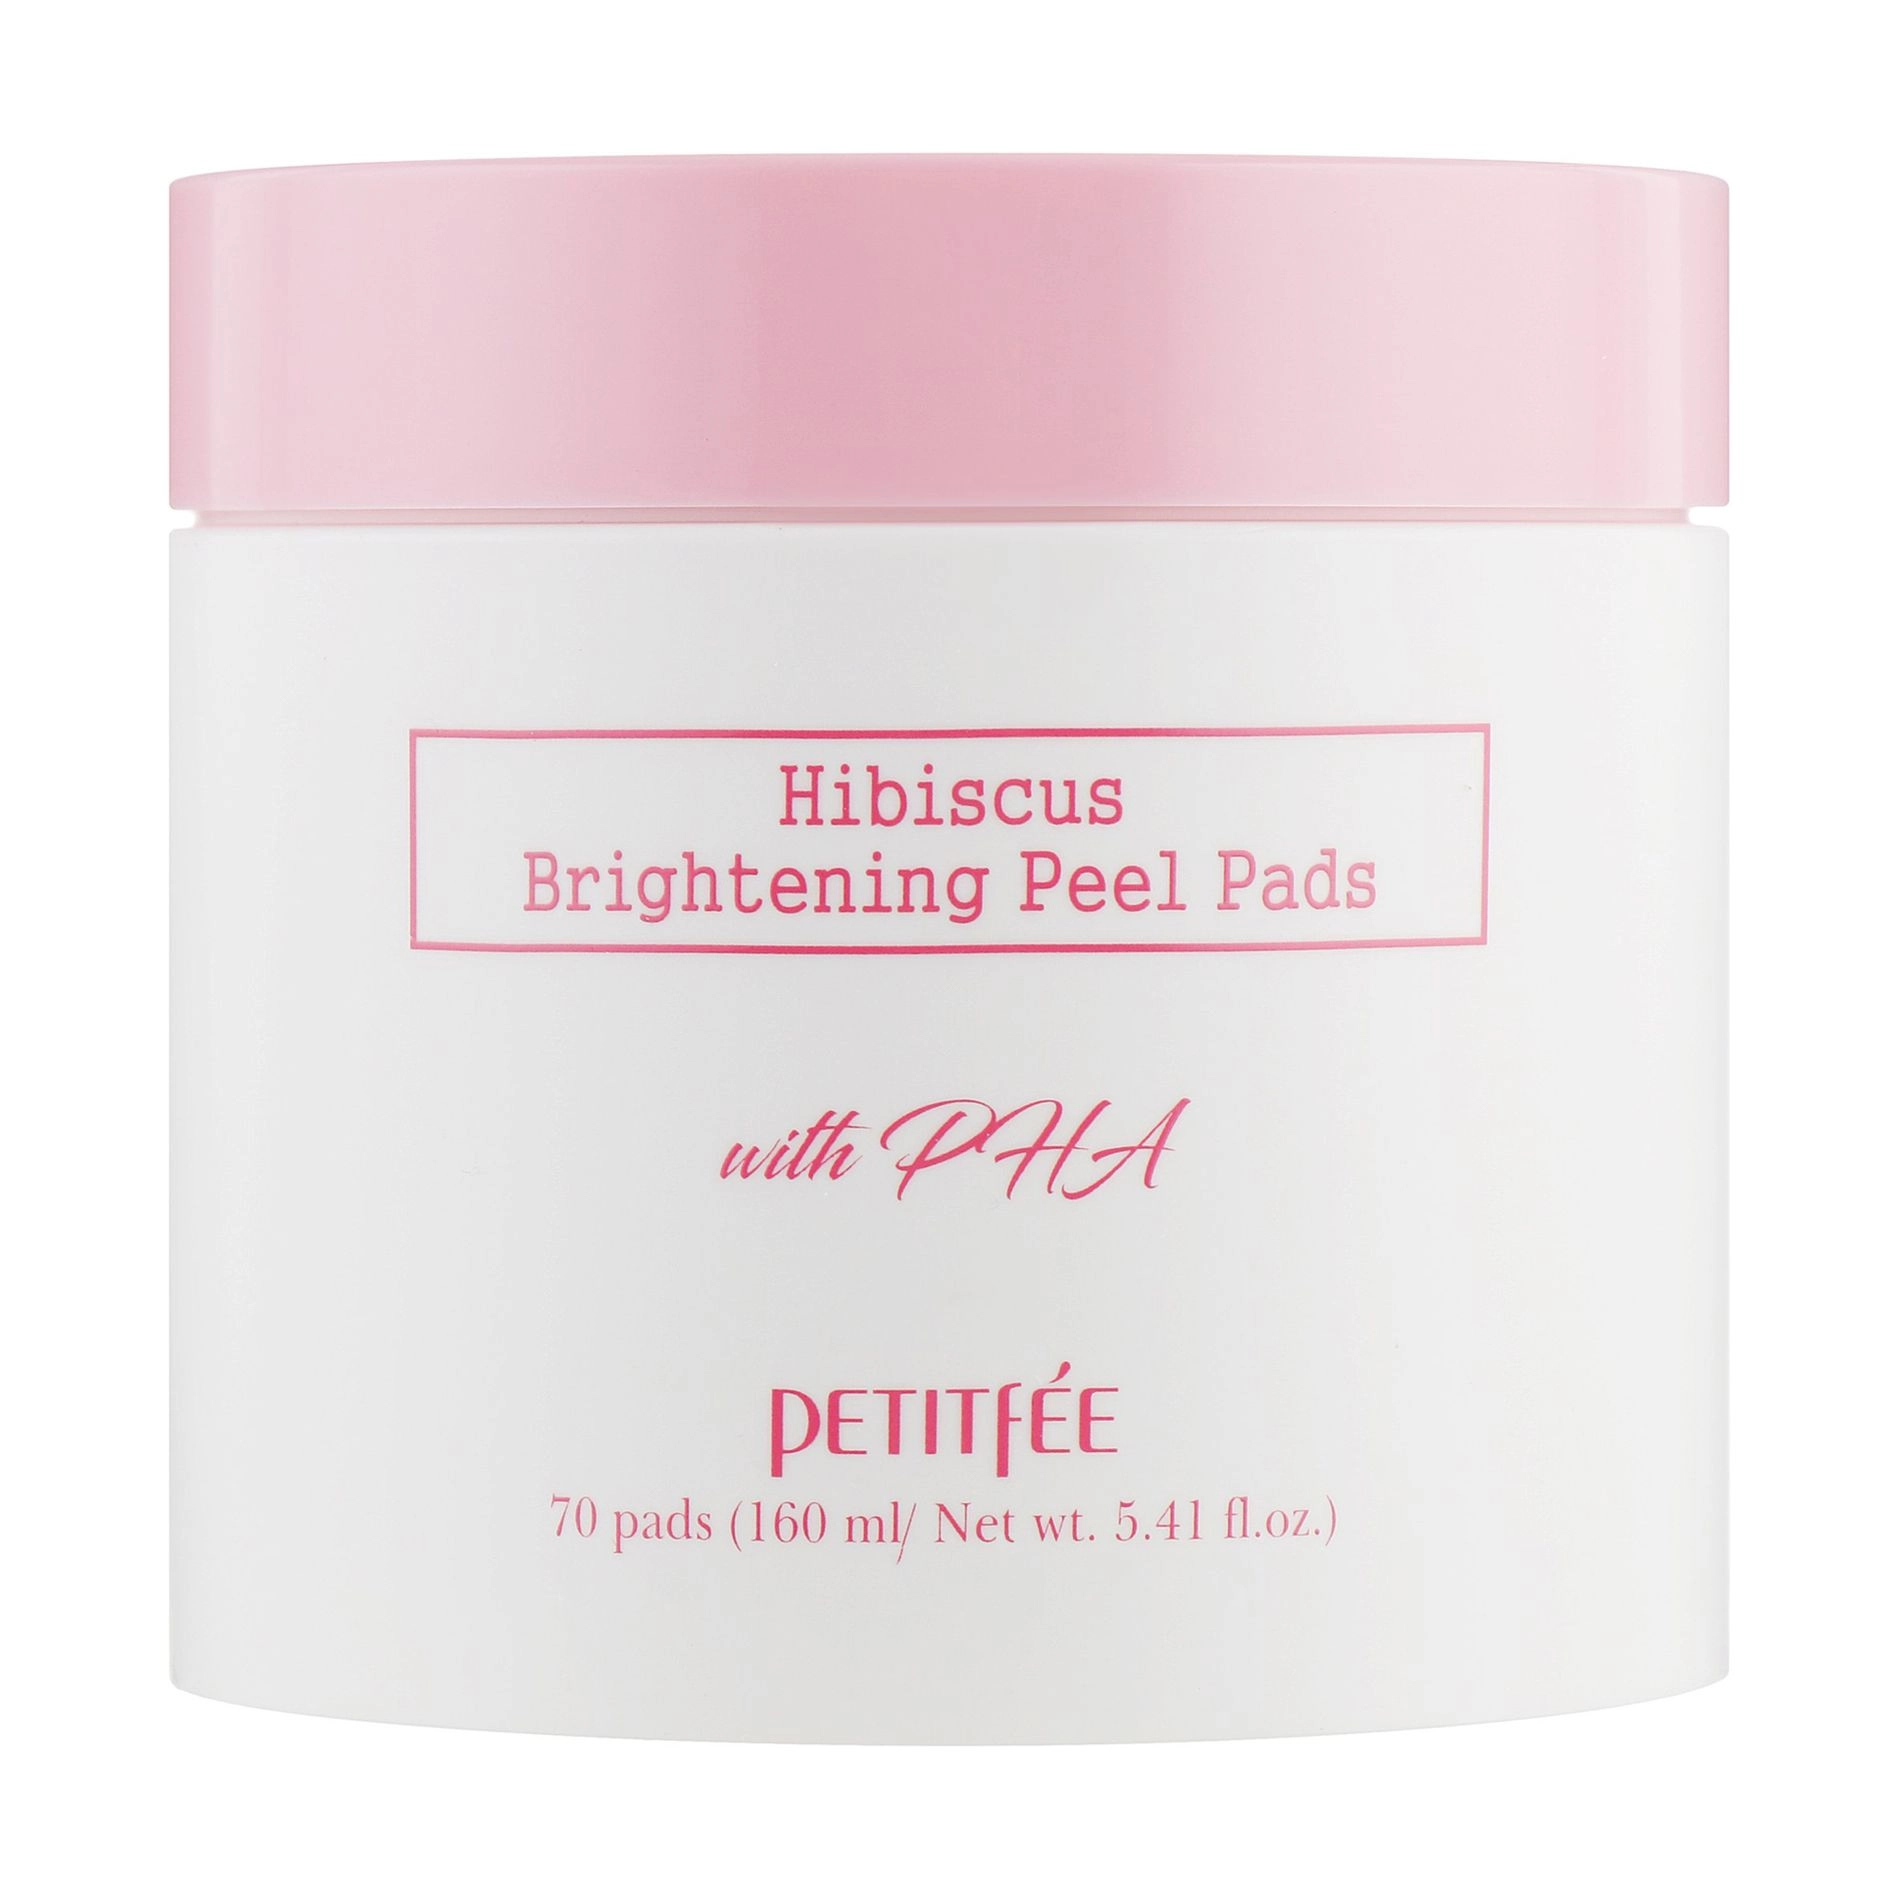 PETITFEE & KOELF Освітлювальні пілінг-пади для обличчя Hibiscus Brightening Peel Pads з гібіскусом та дамаською трояндою, 70 шт - фото N1